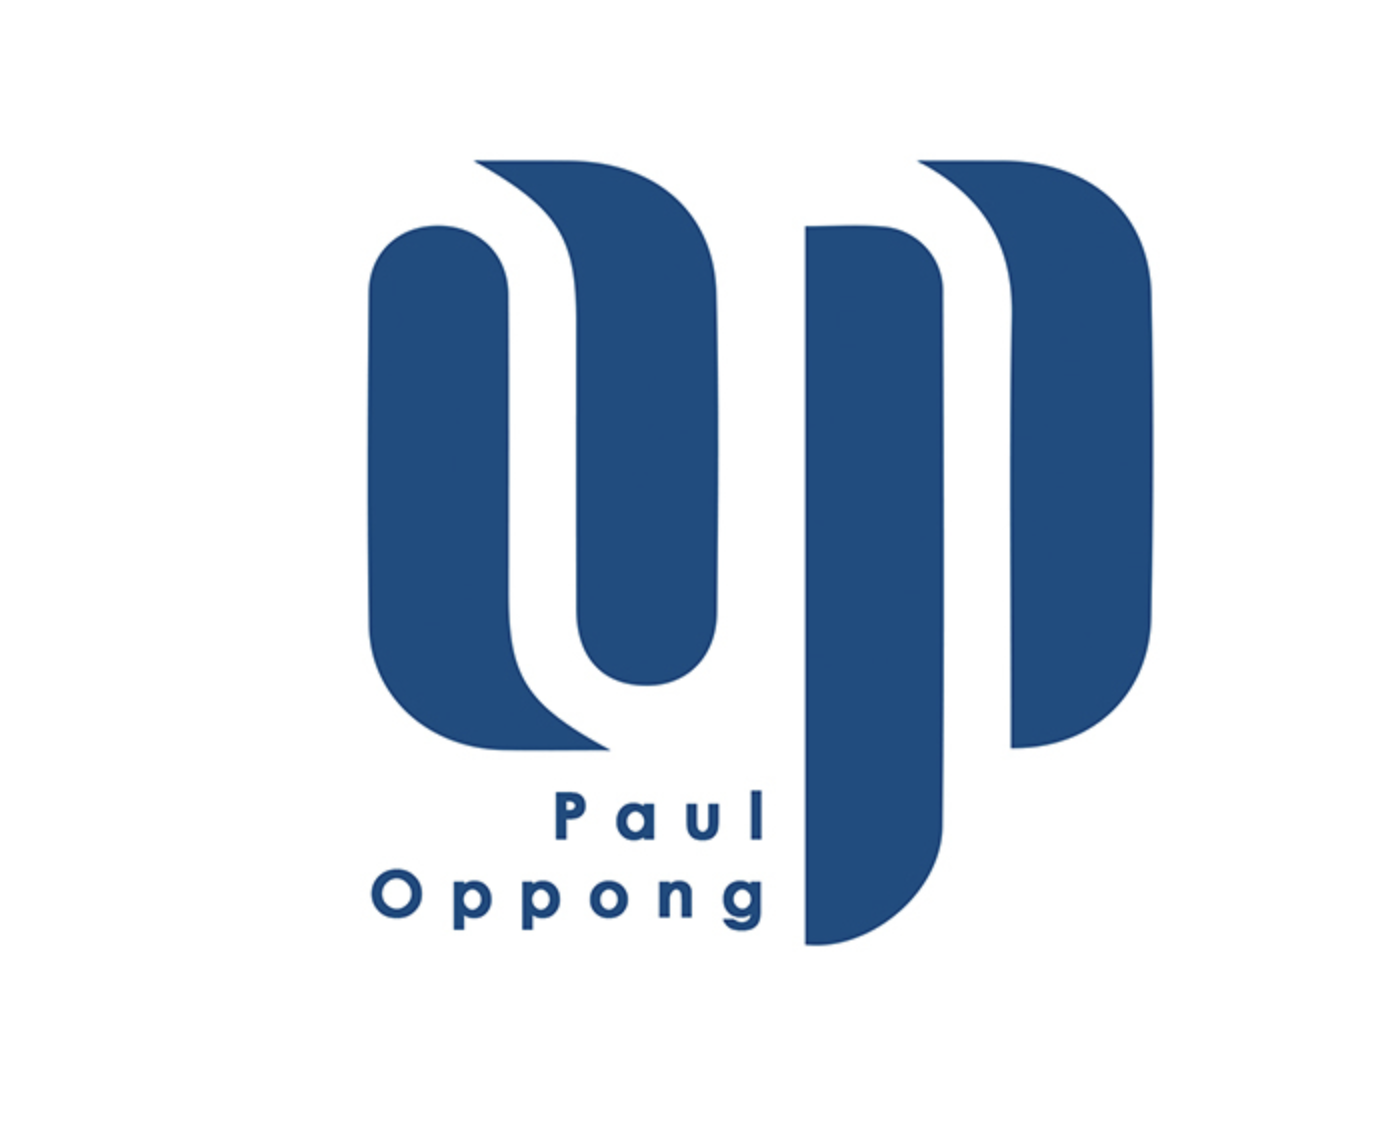 Paul Oppong